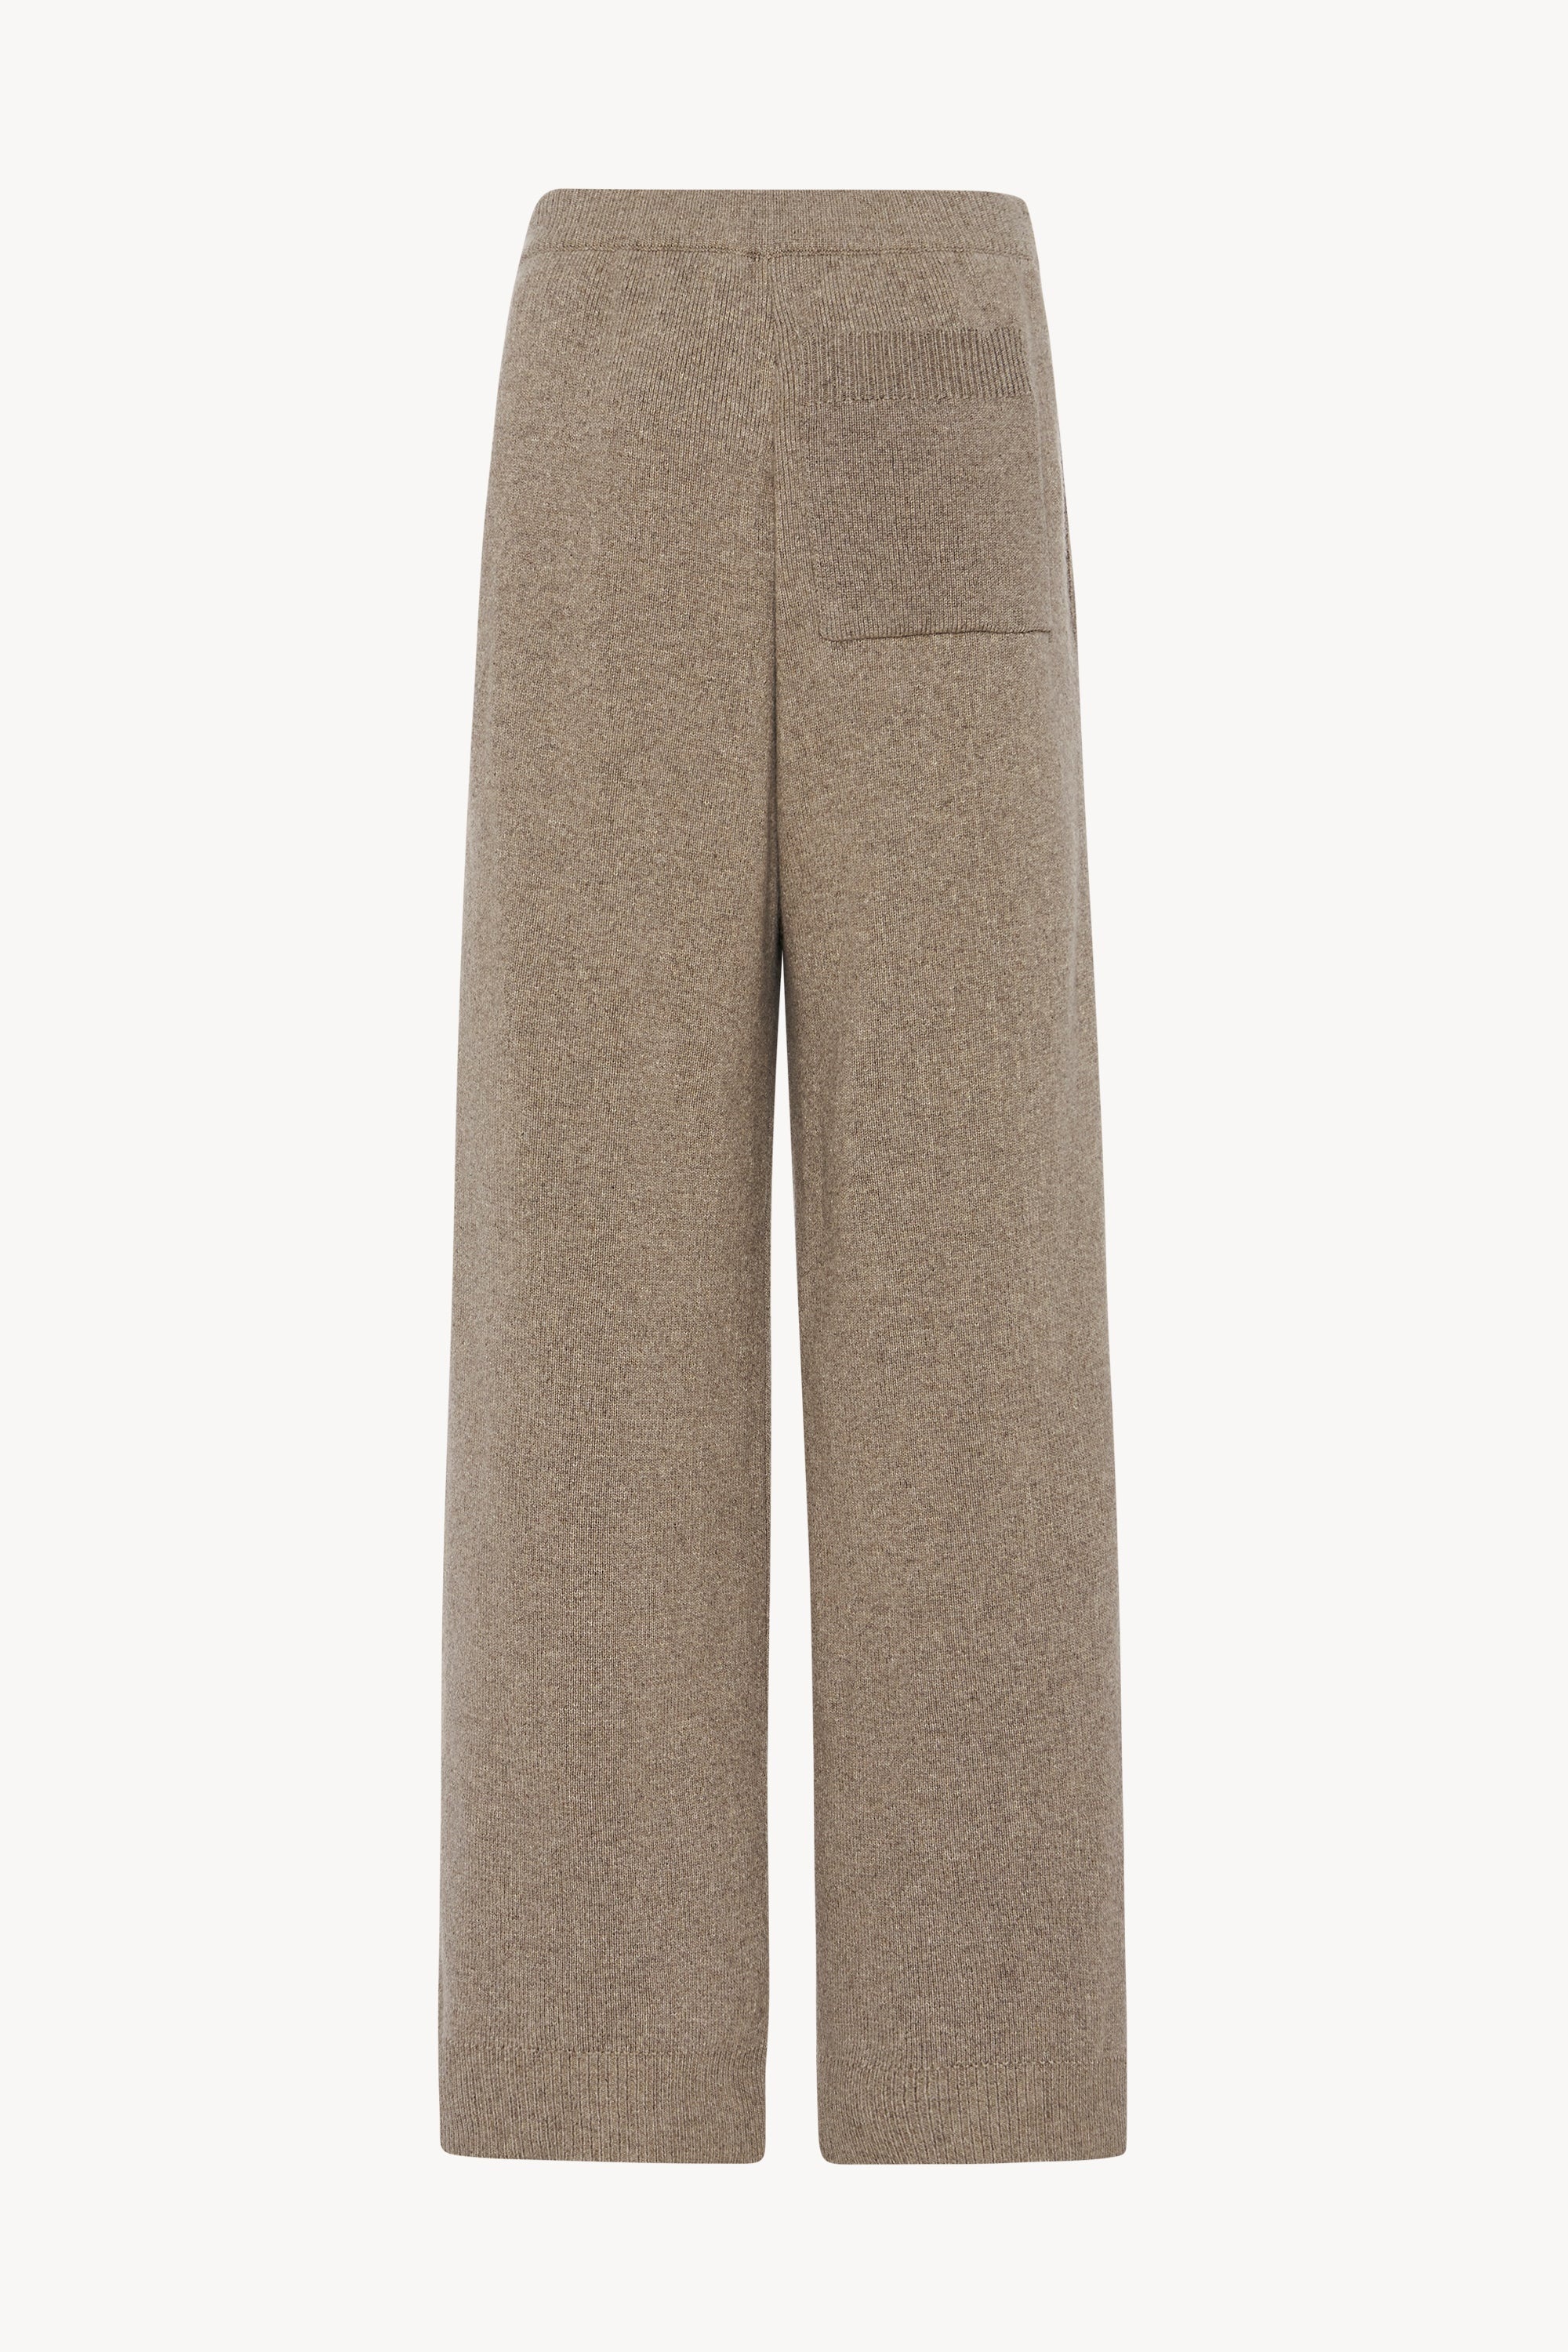 Barrie wide-leg wool-crepe pants